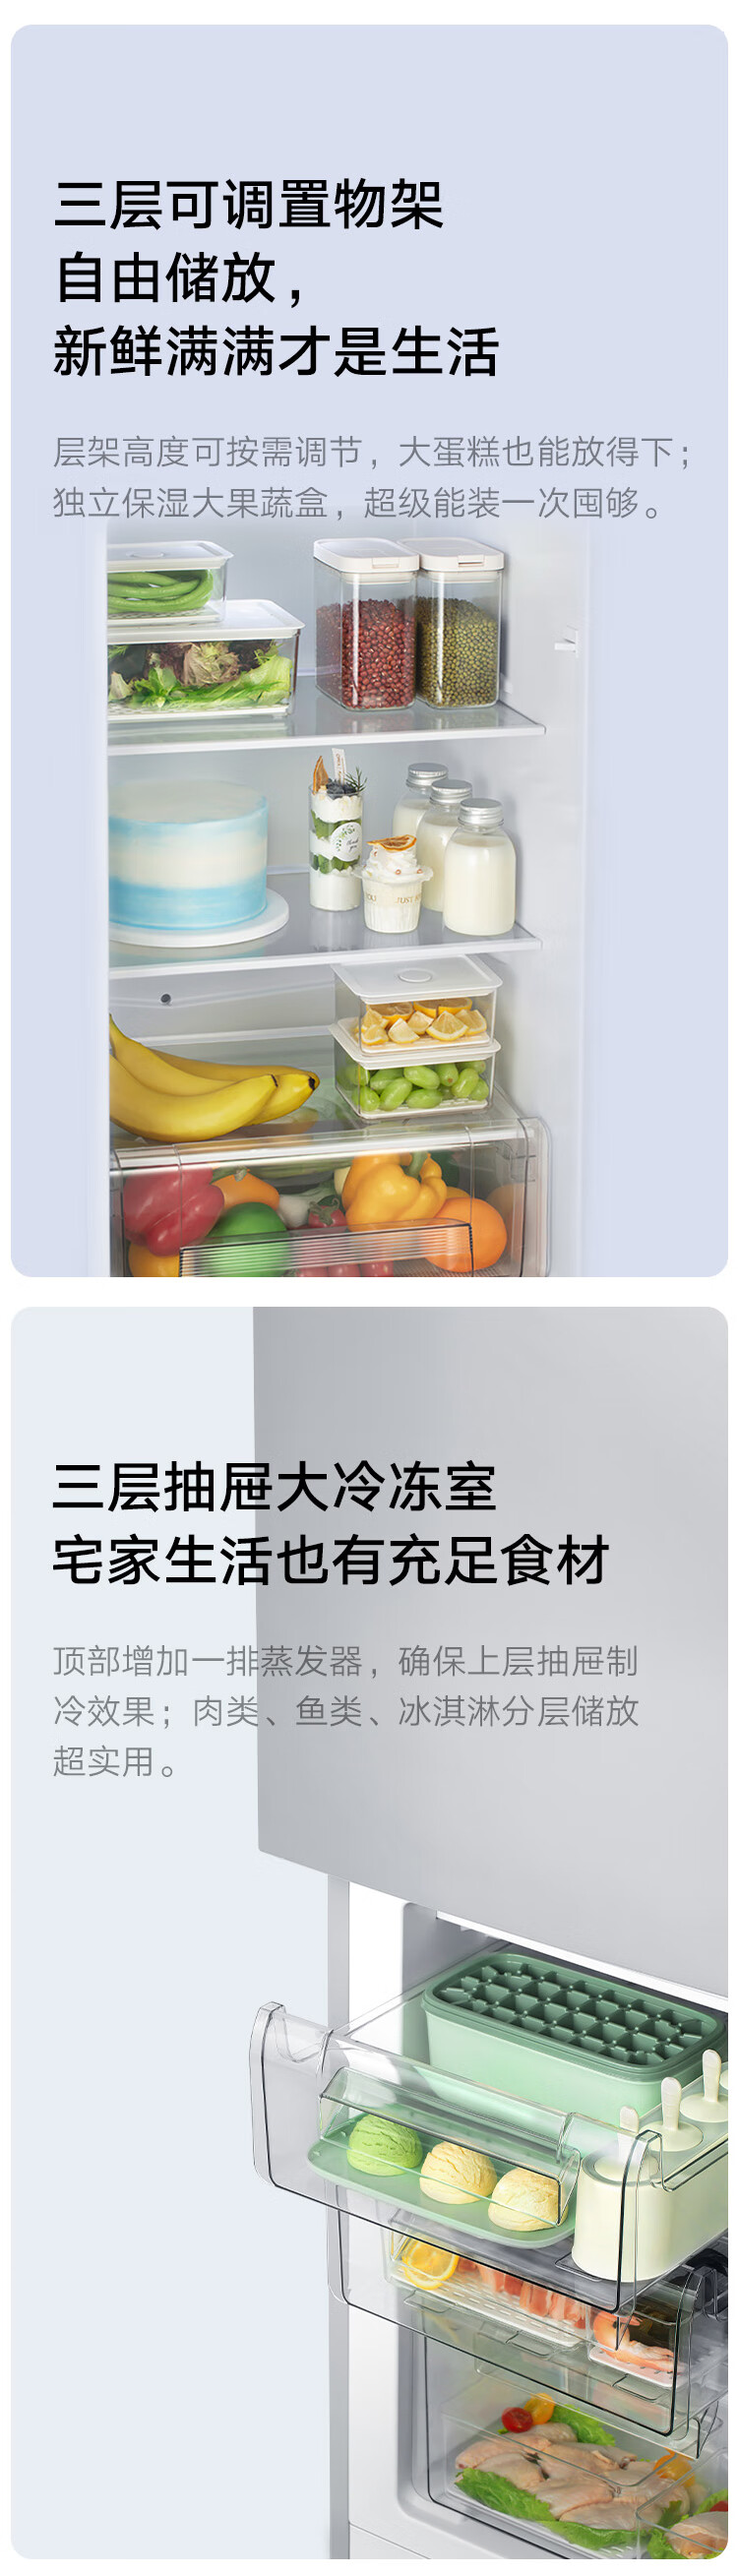 小米米家小米冰箱185L 小型家用电冰箱 低能耗节能 米家双门冰箱185L